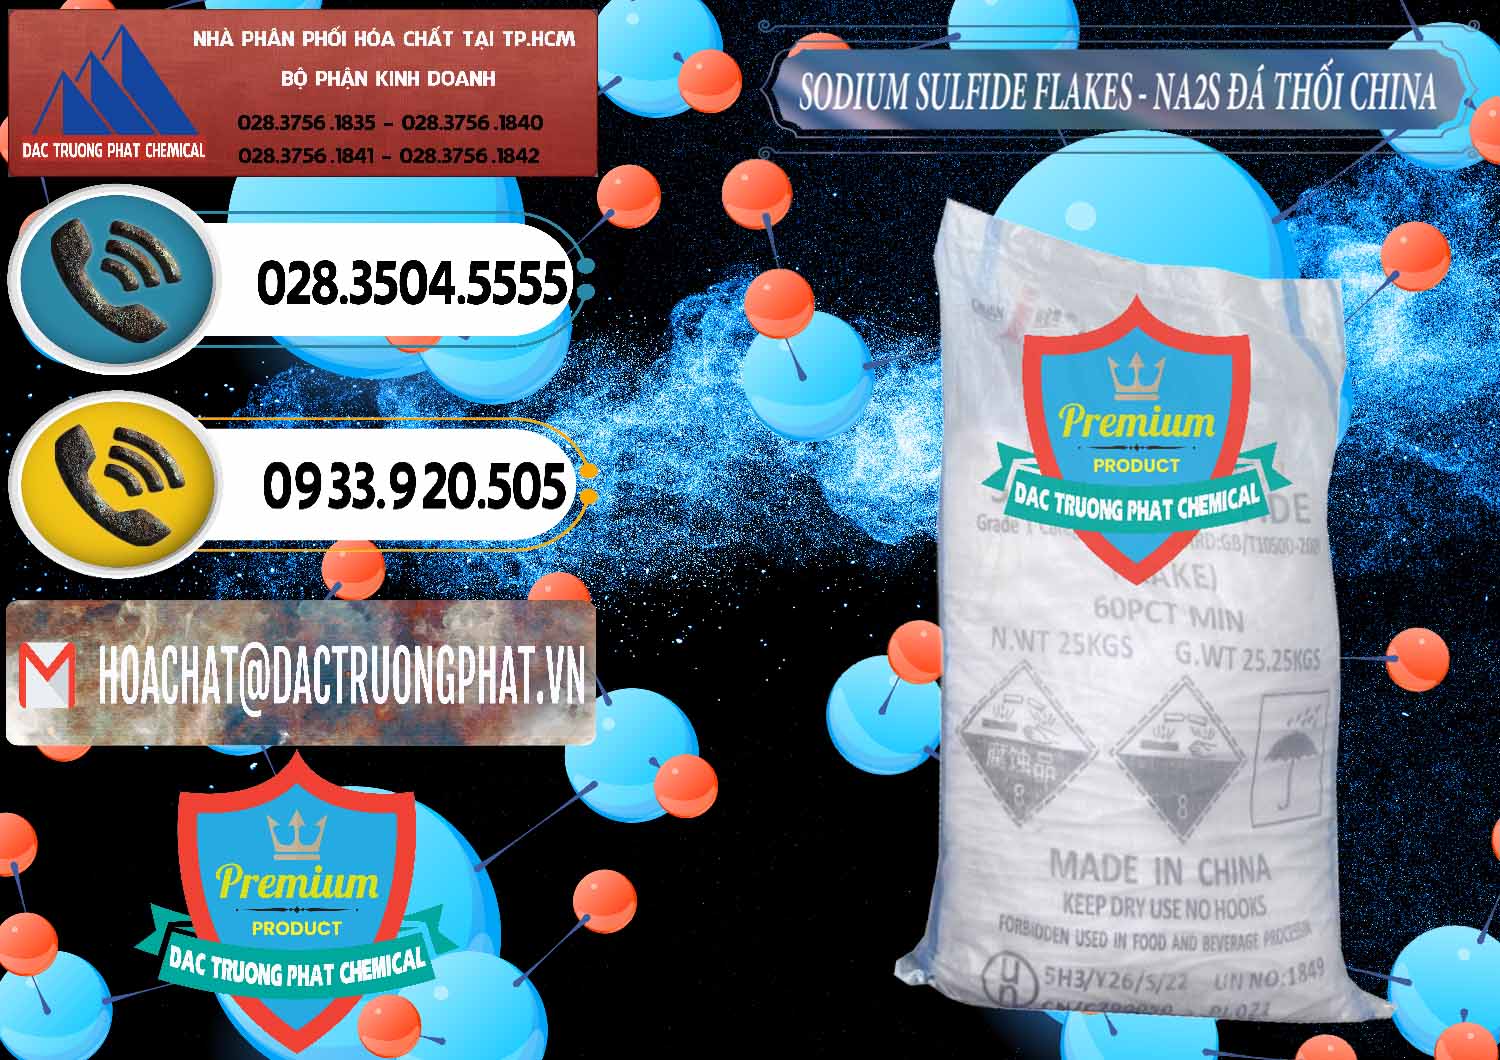 Cty chuyên bán ( cung cấp ) Sodium Sulfide NA2S – Đá Thối Liyuan Trung Quốc China - 0385 - Chuyên phân phối ( cung cấp ) hóa chất tại TP.HCM - hoachatdetnhuom.vn